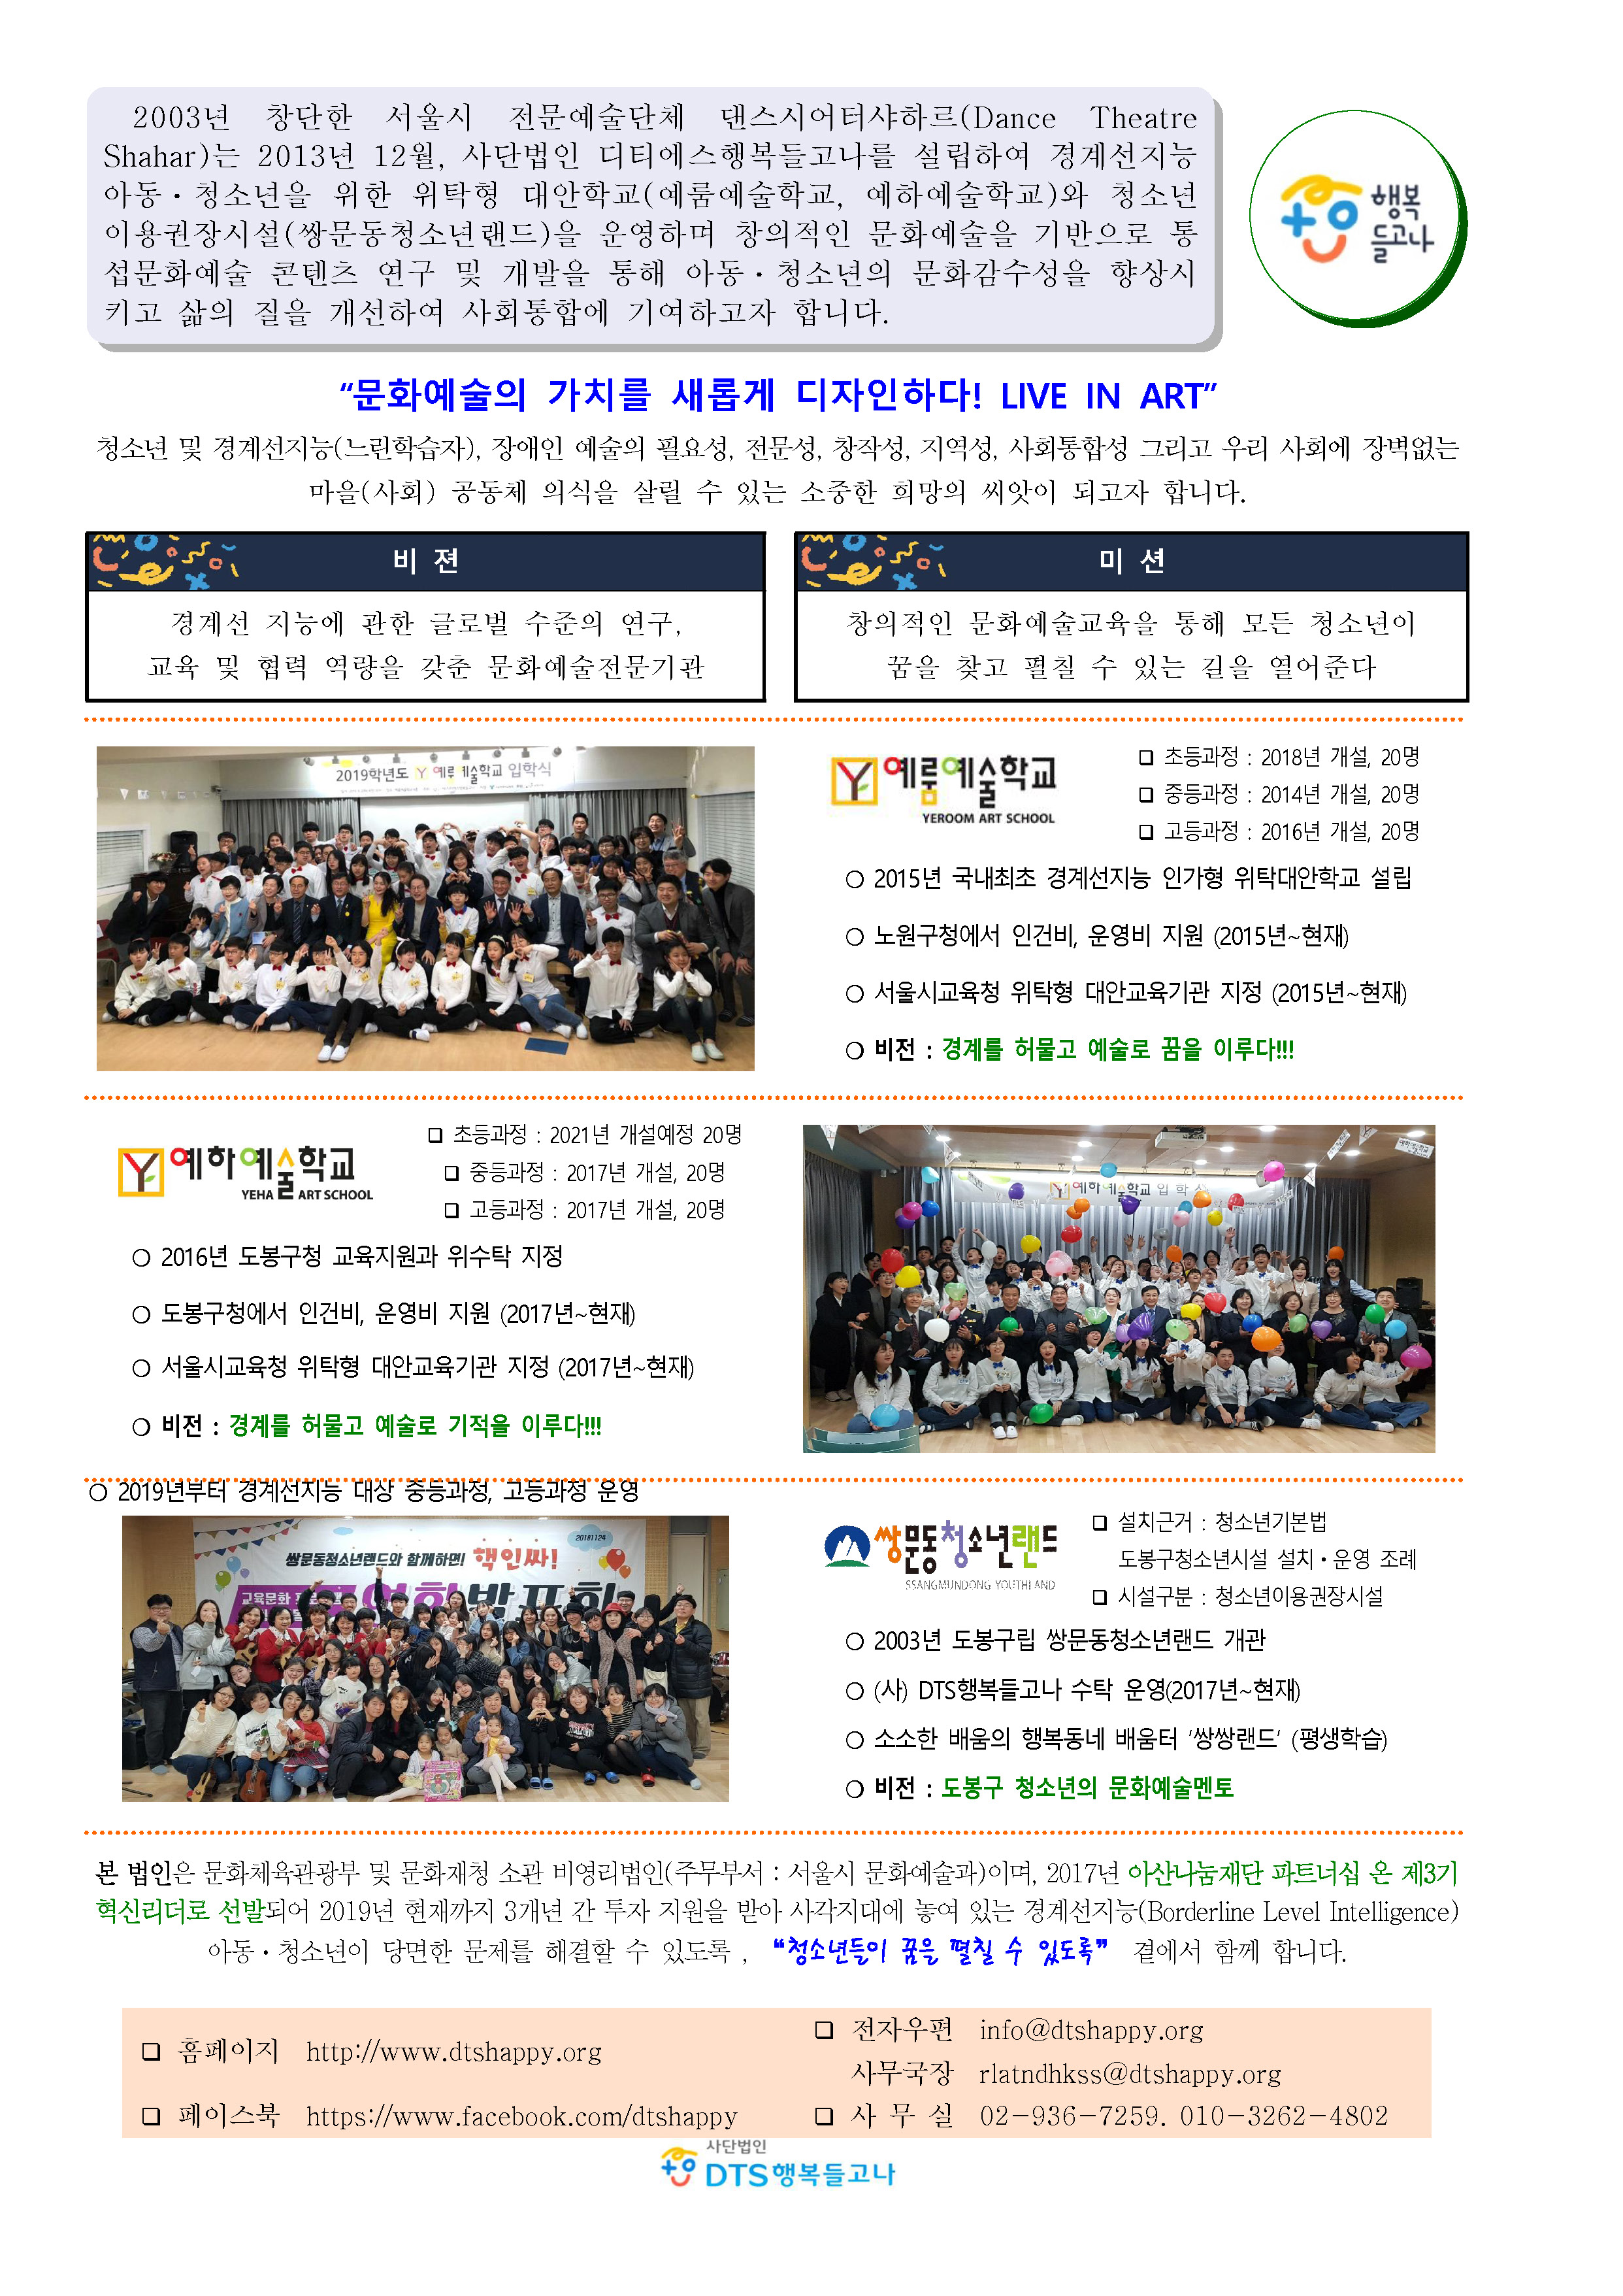 2020_ 사단법인 DTS행복들고나_소개(사회공헌)_페이지_1.jpg